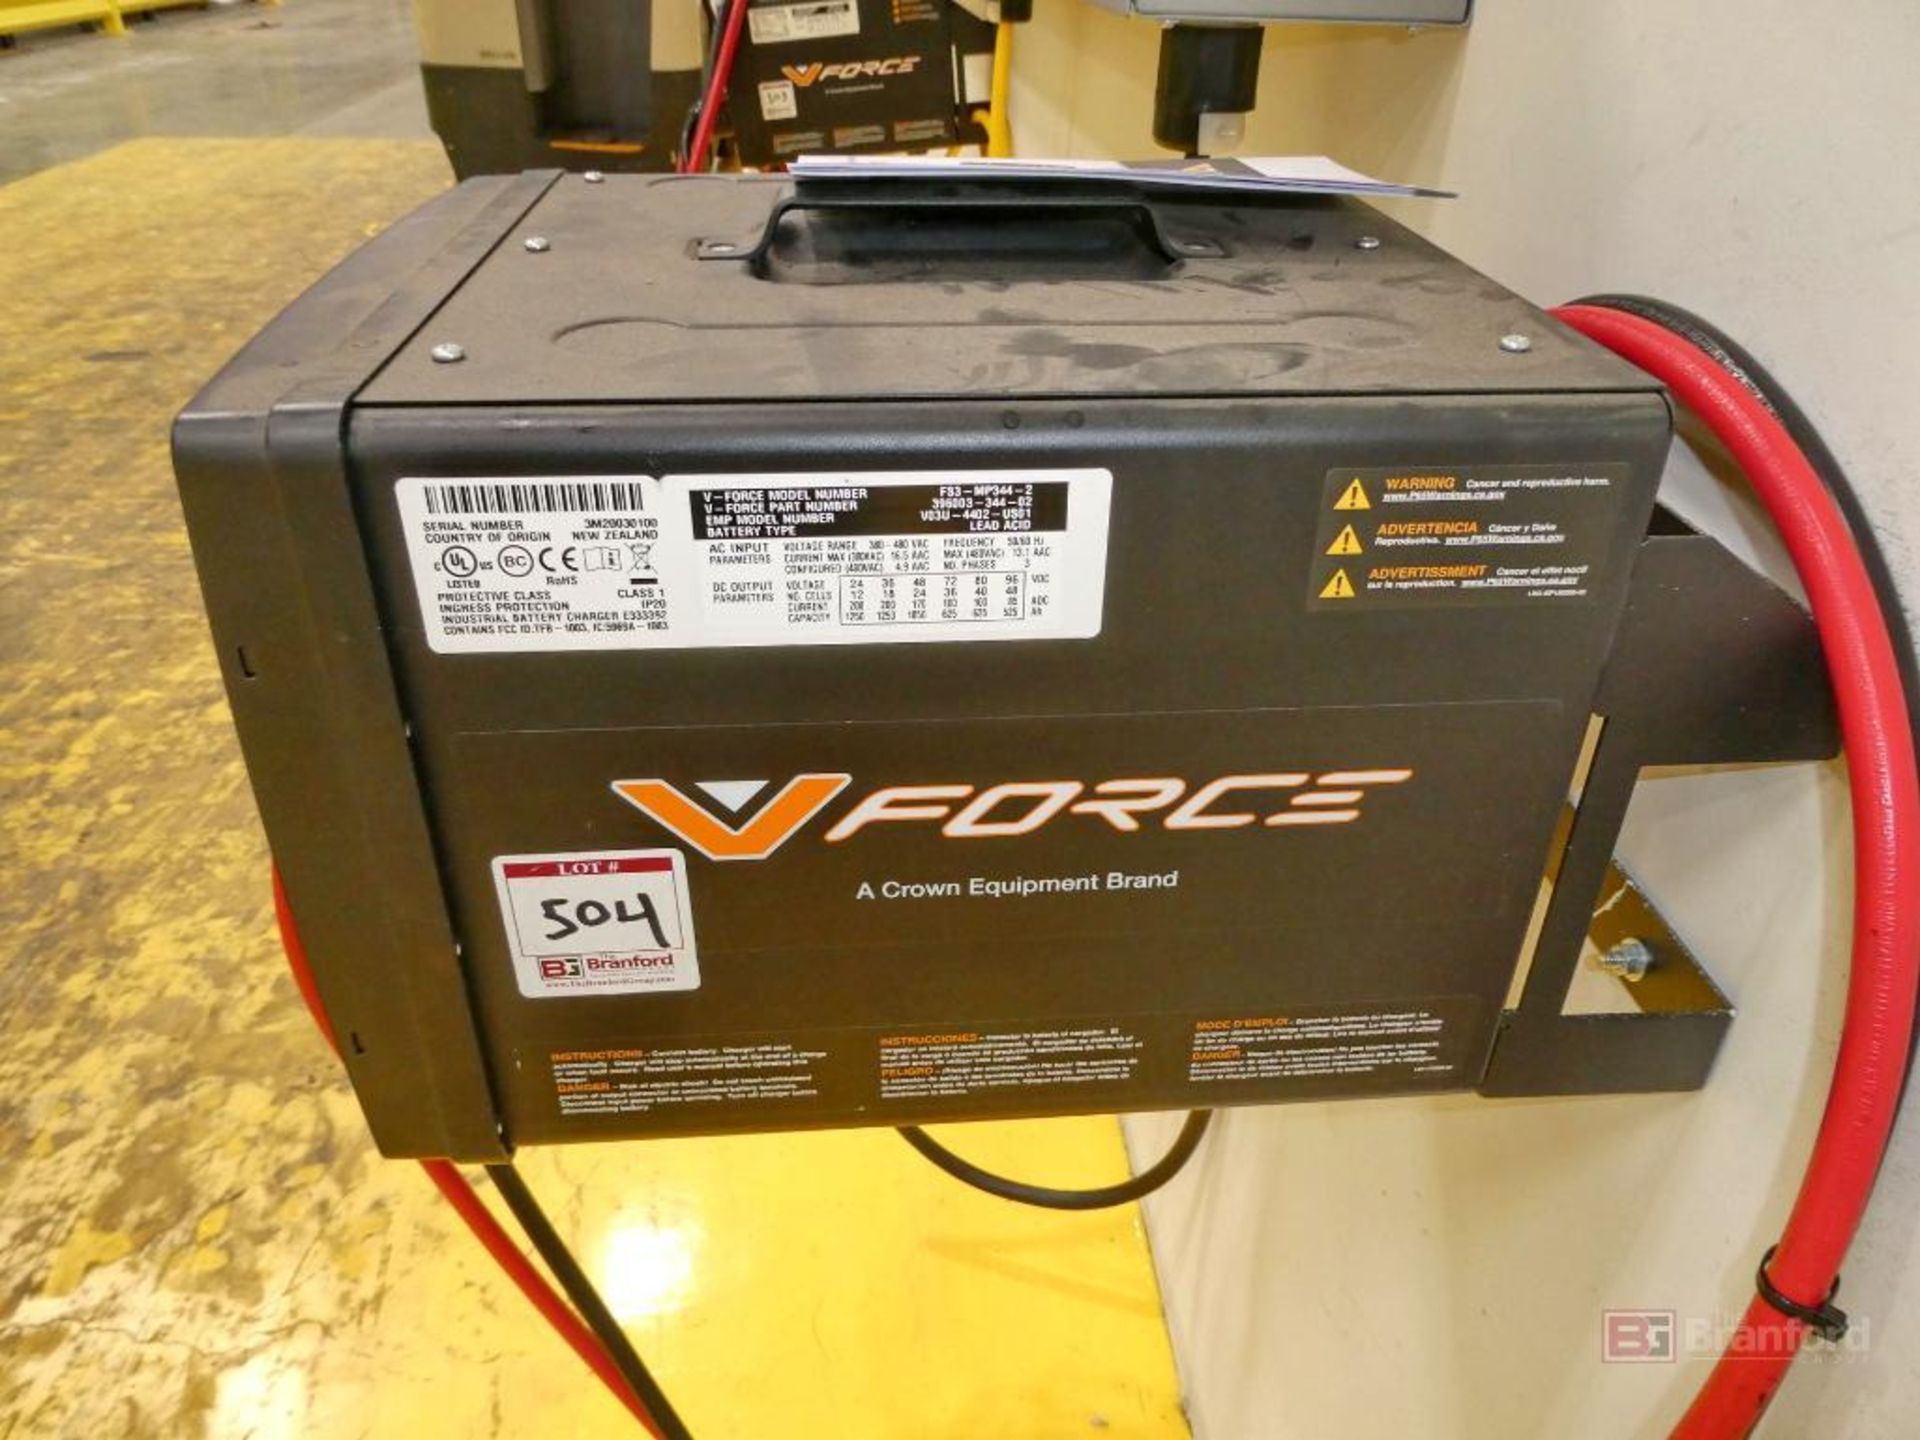 V-Force Model FS3-MP344-3, Forklift Multi-Voltage Battery Charger - Image 3 of 6